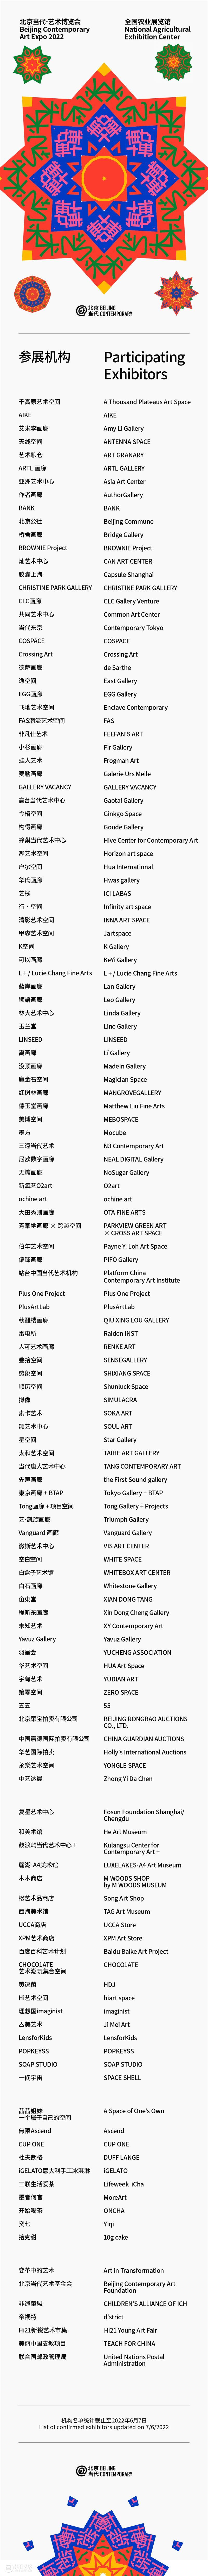 北京当代·艺术博览会祝大家清享「夏至」 崇真艺客